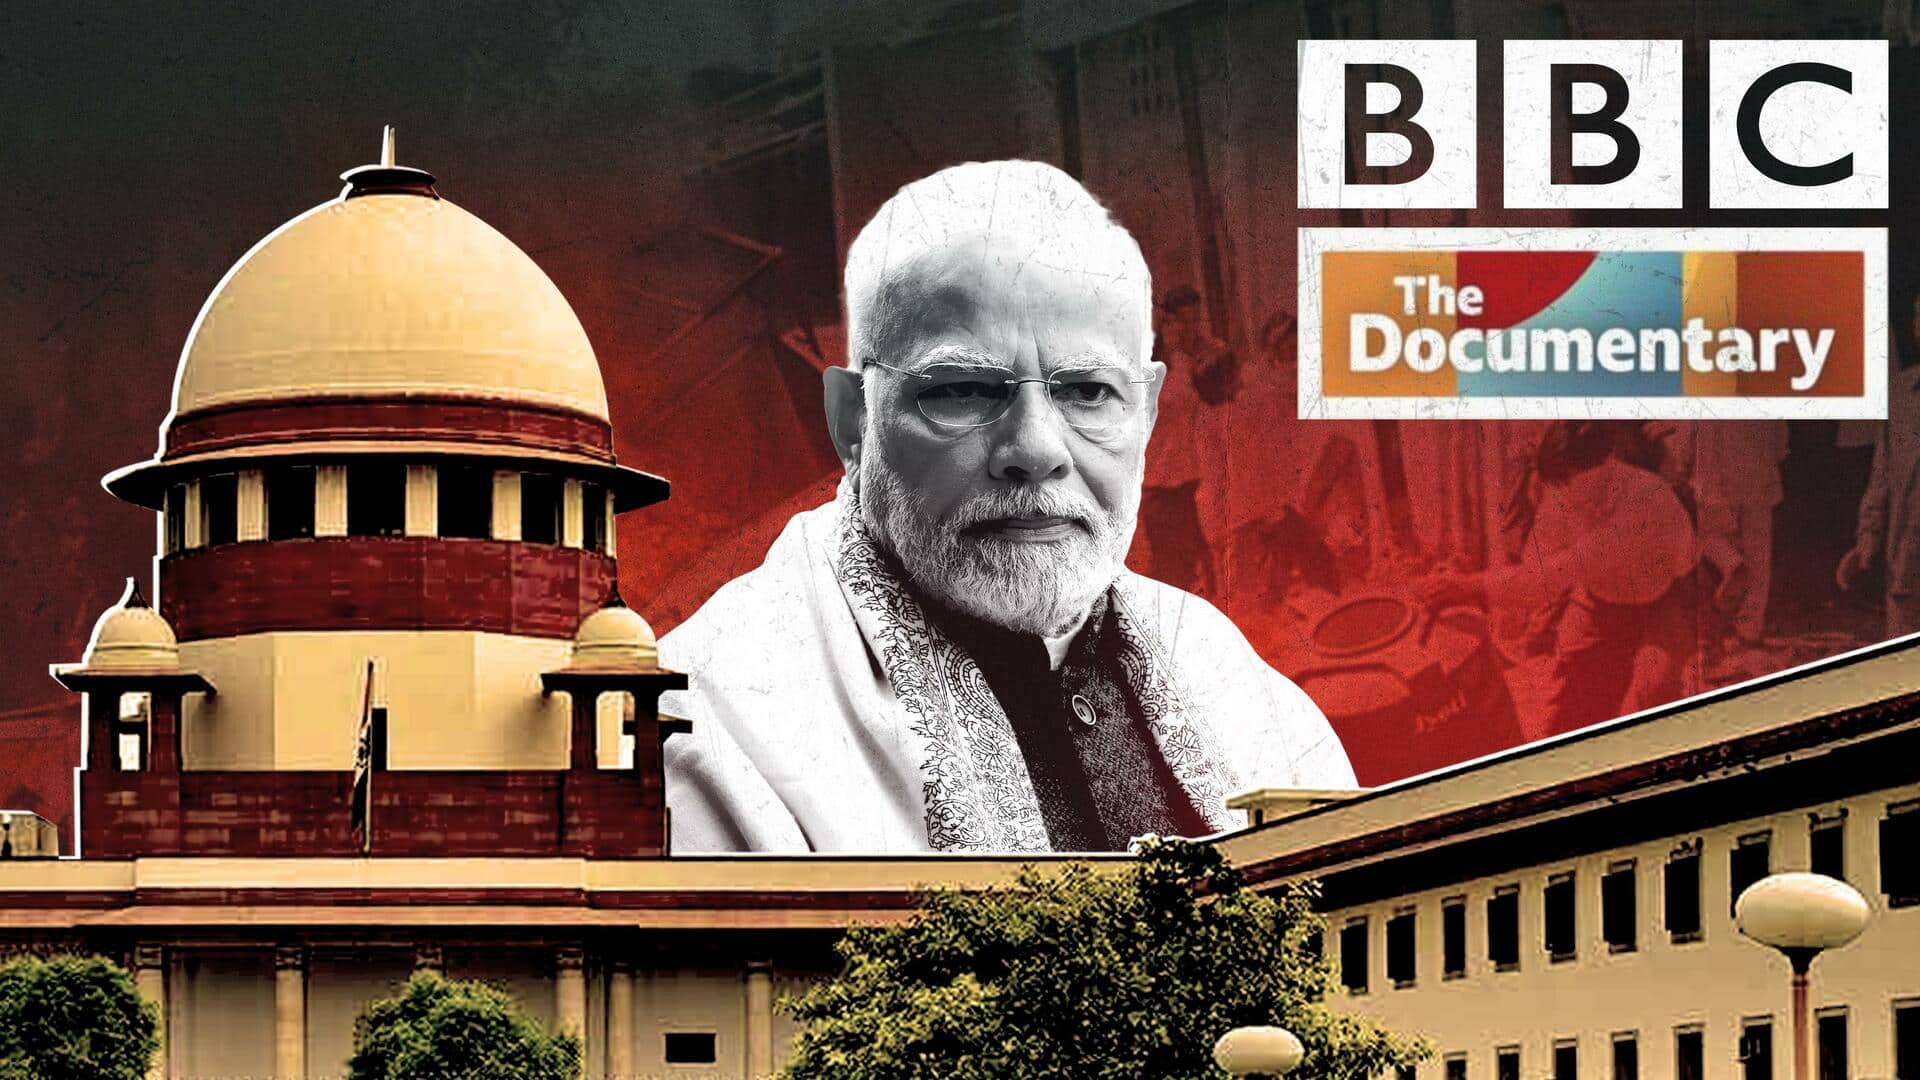 सुप्रीम कोर्ट ने खारिज की भारत में BBC पर प्रतिबंध लगाने की मांग करने वाली याचिका